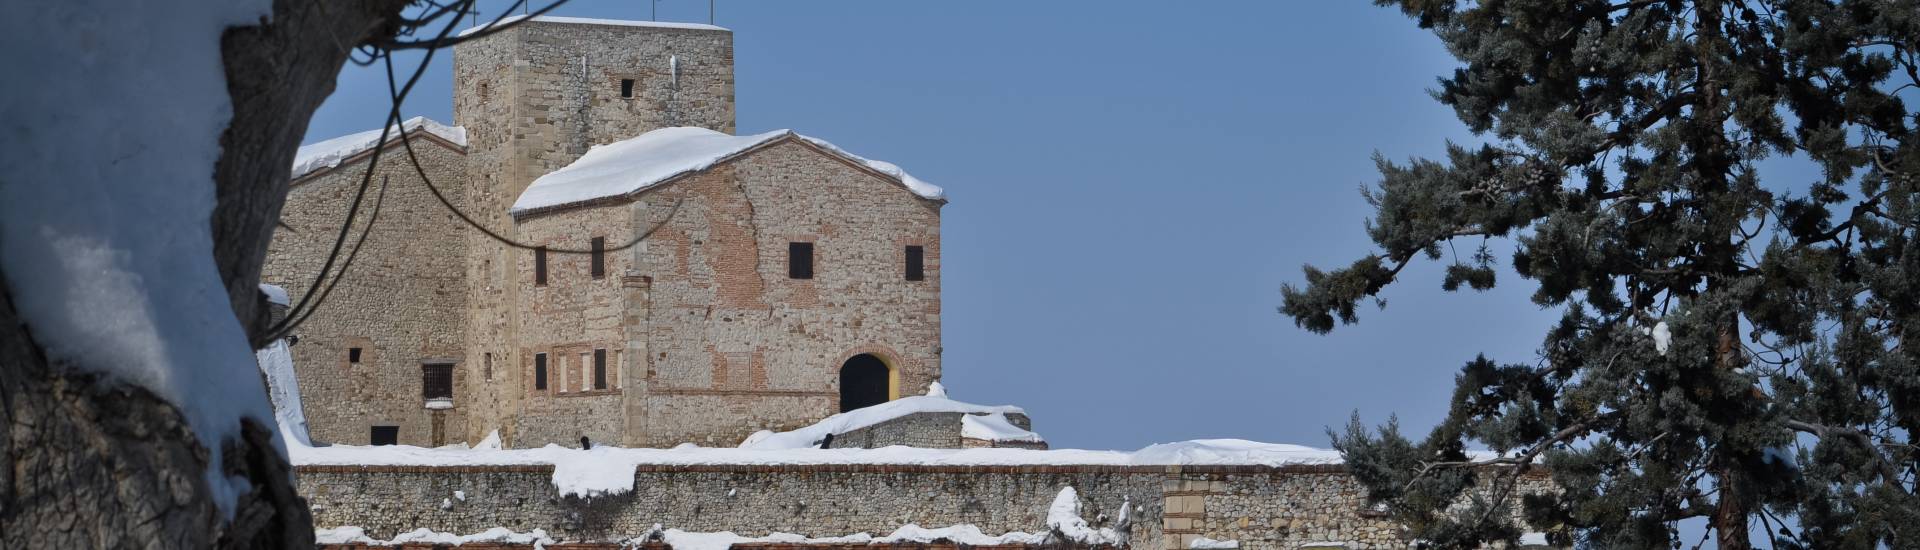 Malatesta Rocca - Verucchio Malatestian fortress with snow 2 photo credits: |Alessandra D'Alba| - IAT VERUCCHIO